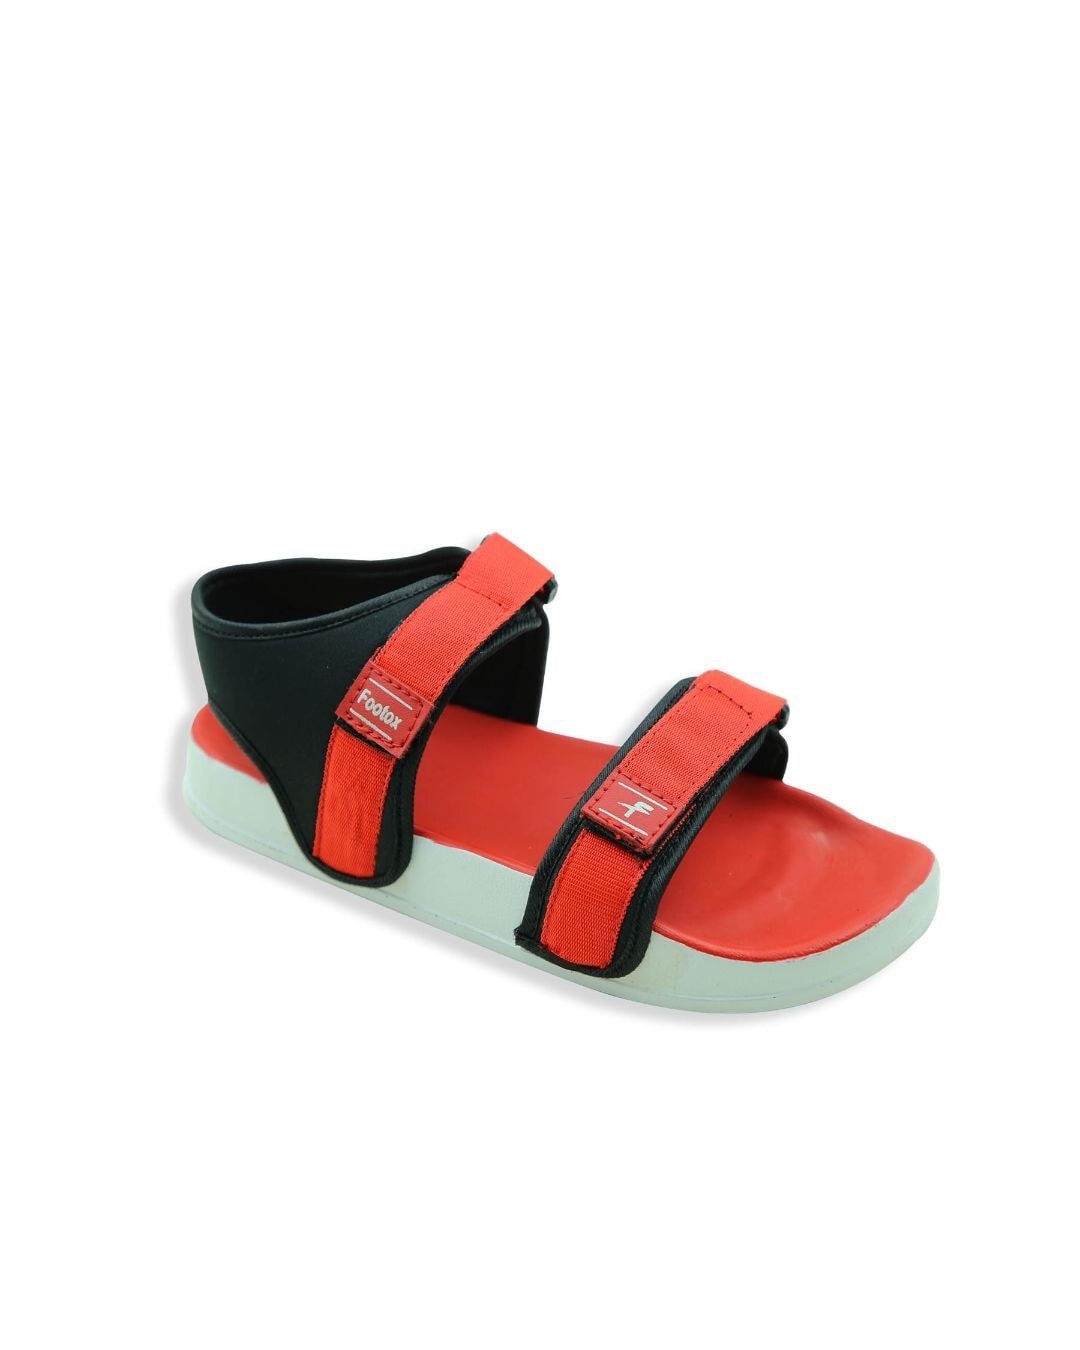 Shop Red Comfort Sandals For Men